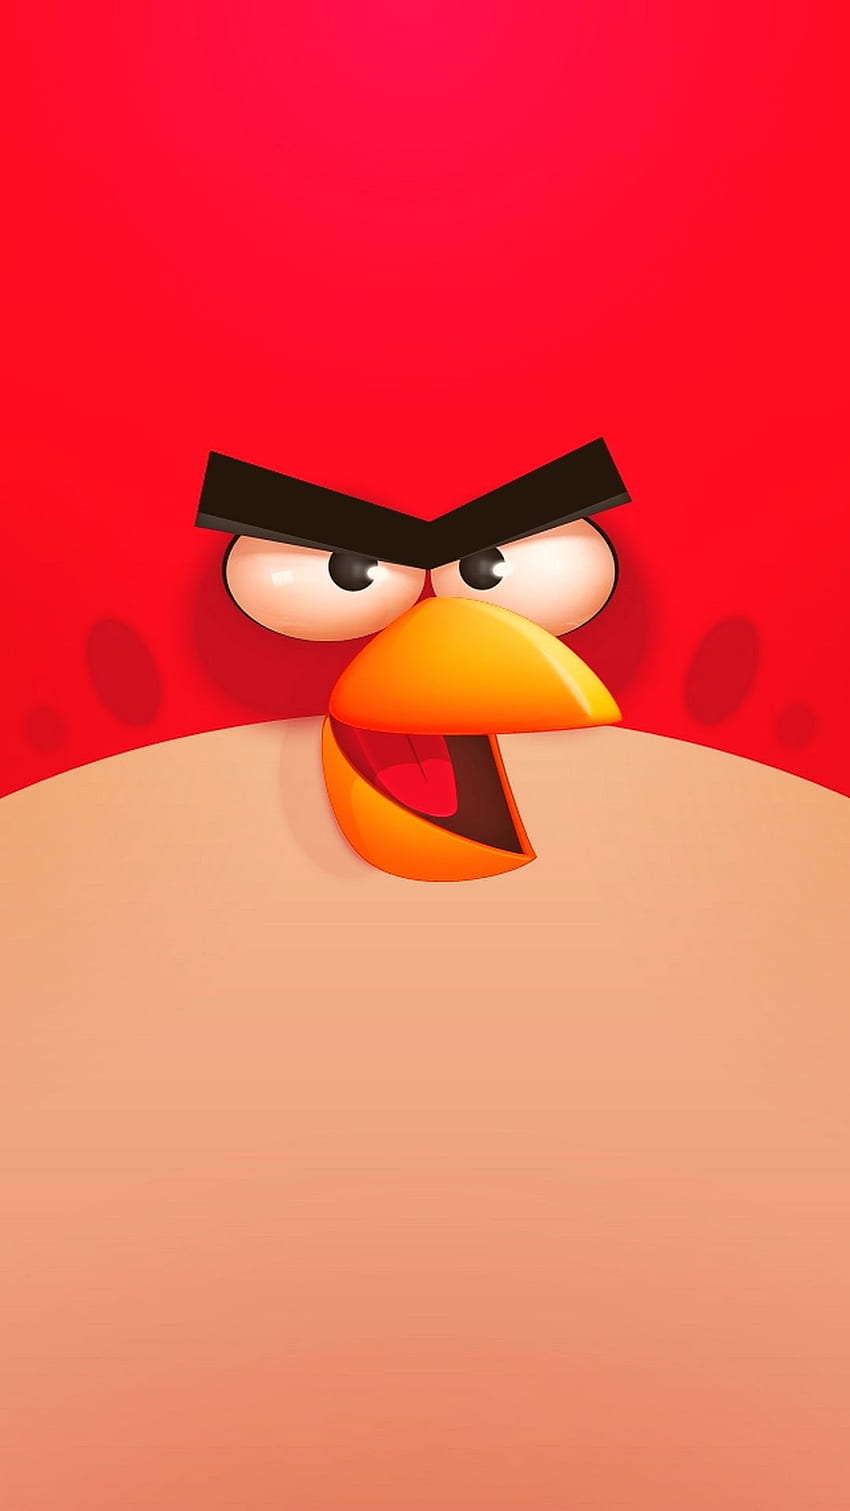 Angry birds phim hoạt hình màu xanh lá cây và màu vàng chim con dễ thương  4K tải xuống hình nền